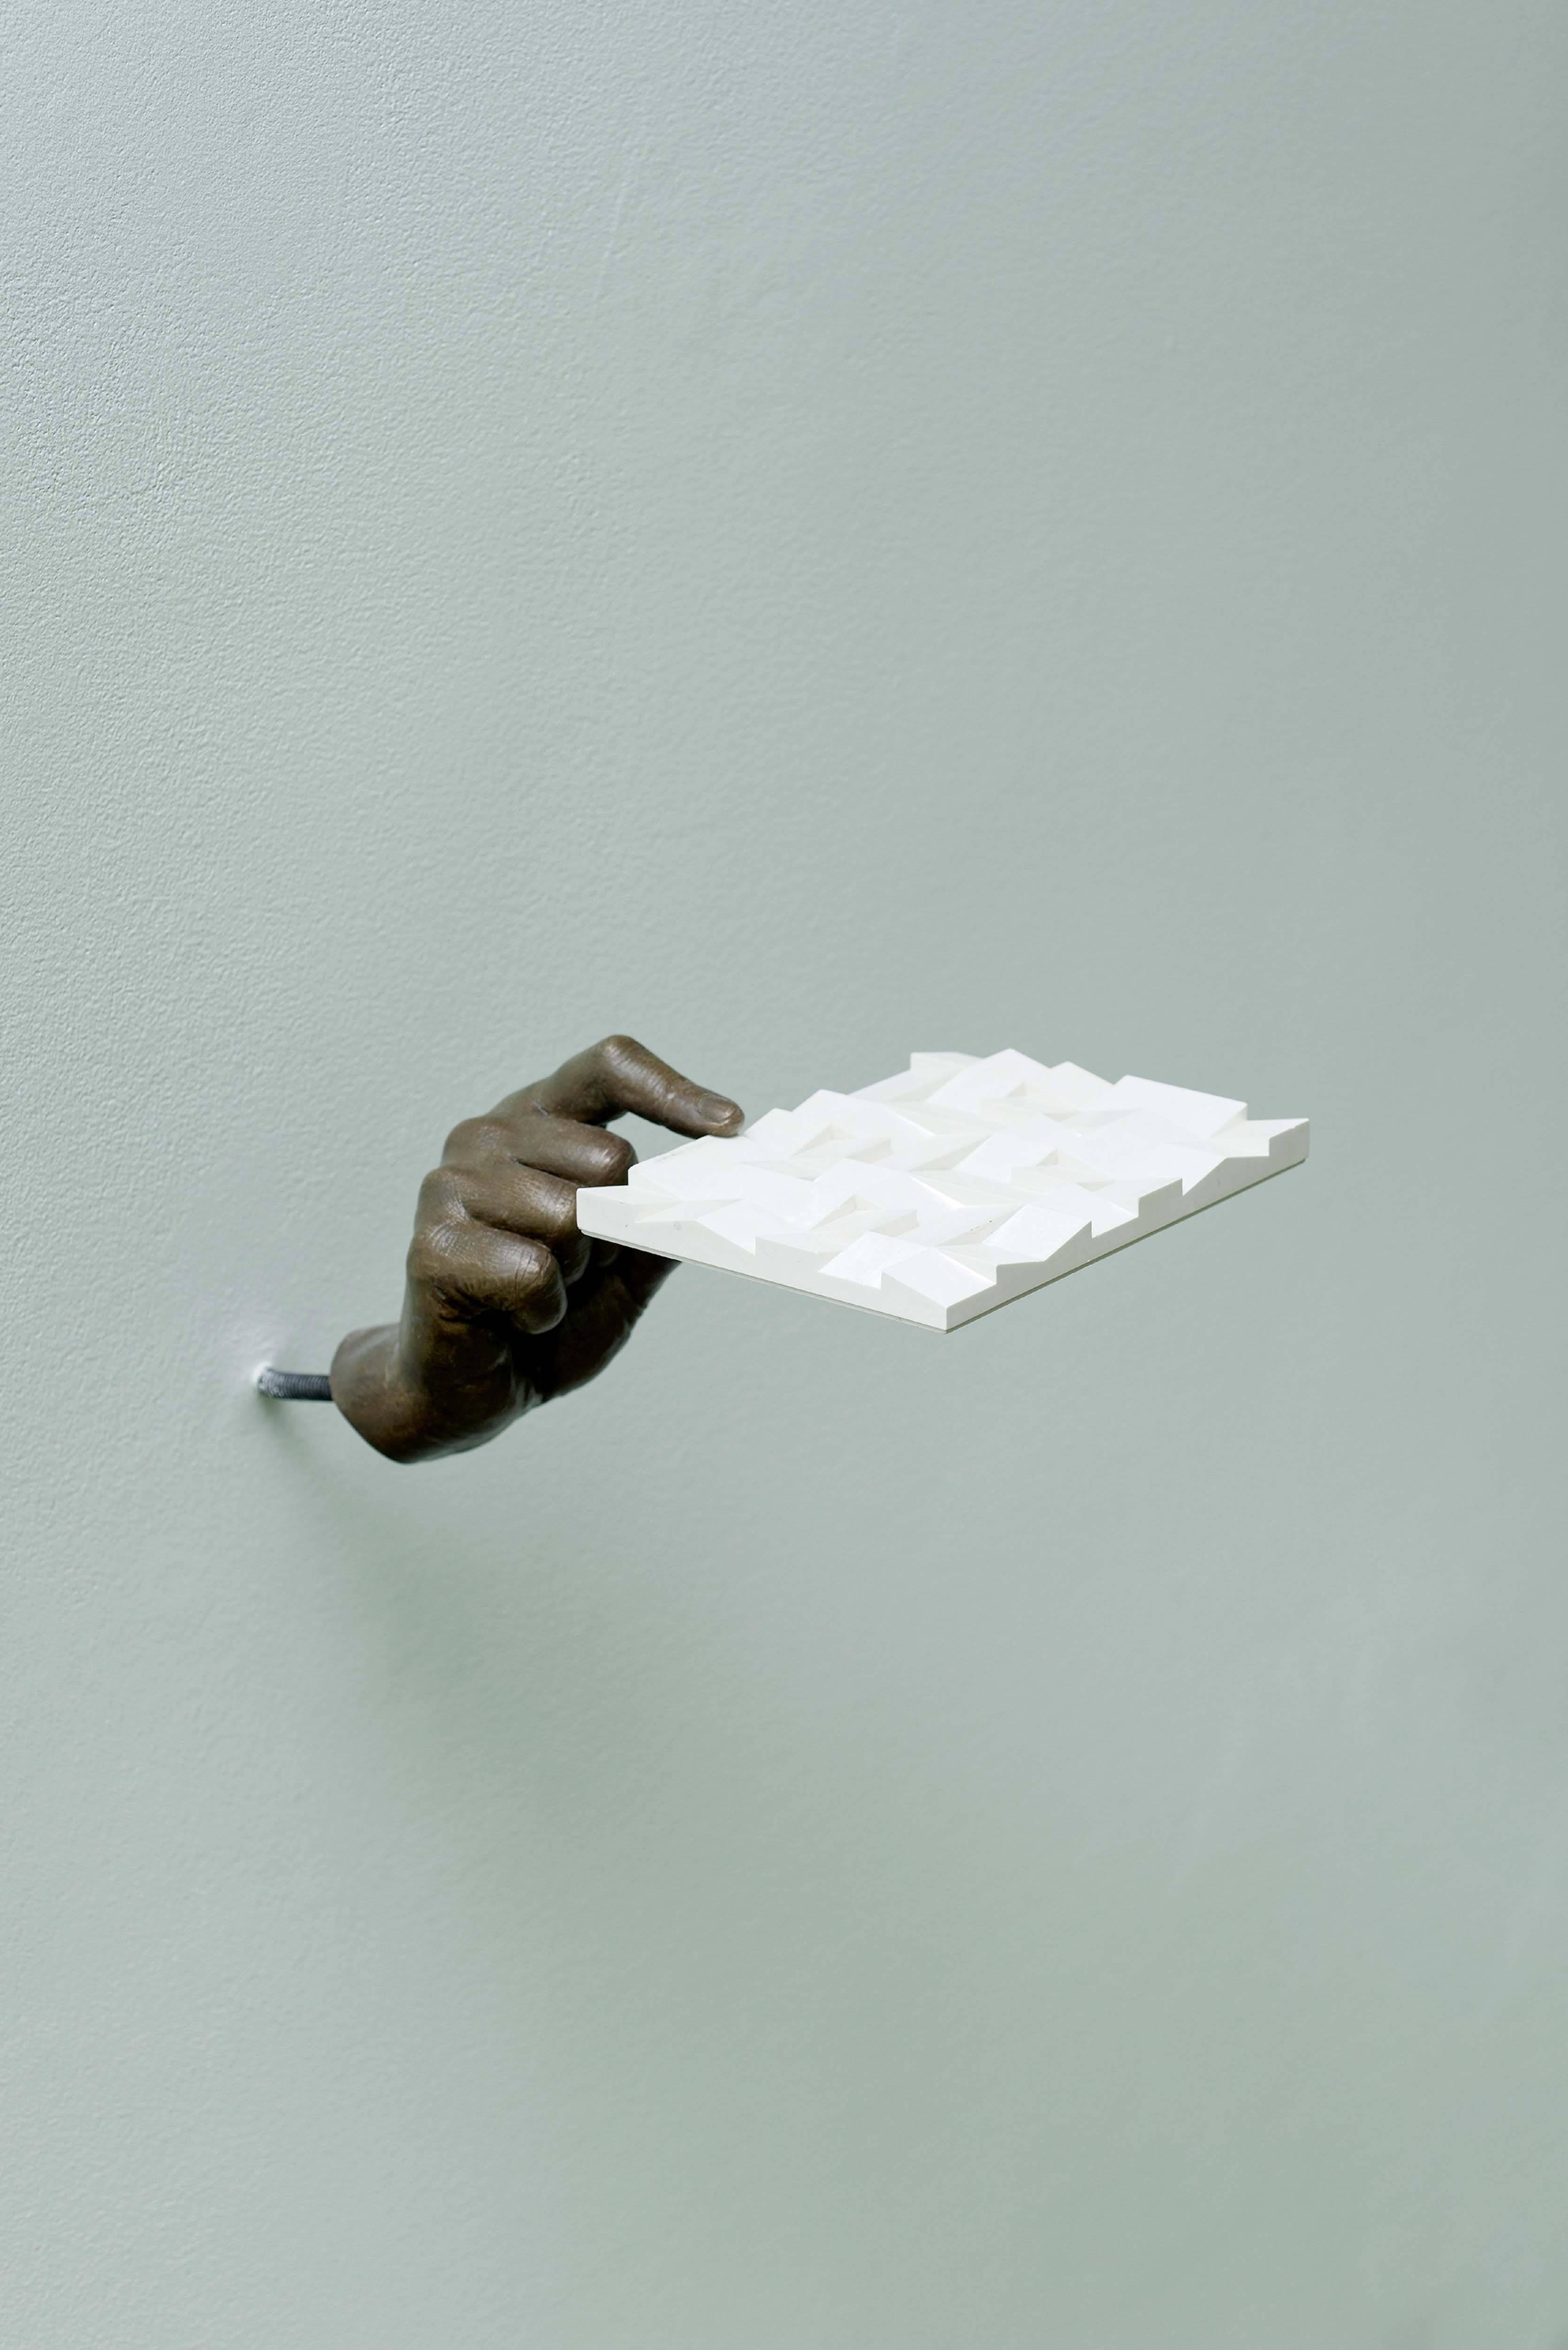 Living Images [2015] de Charlotte Moth. Détail de l’exposition Lightly in the world (2016) à la galerie Marcelle Alix, Paris XXe. Finaliste du prix Marcel Duchamp 2017.
